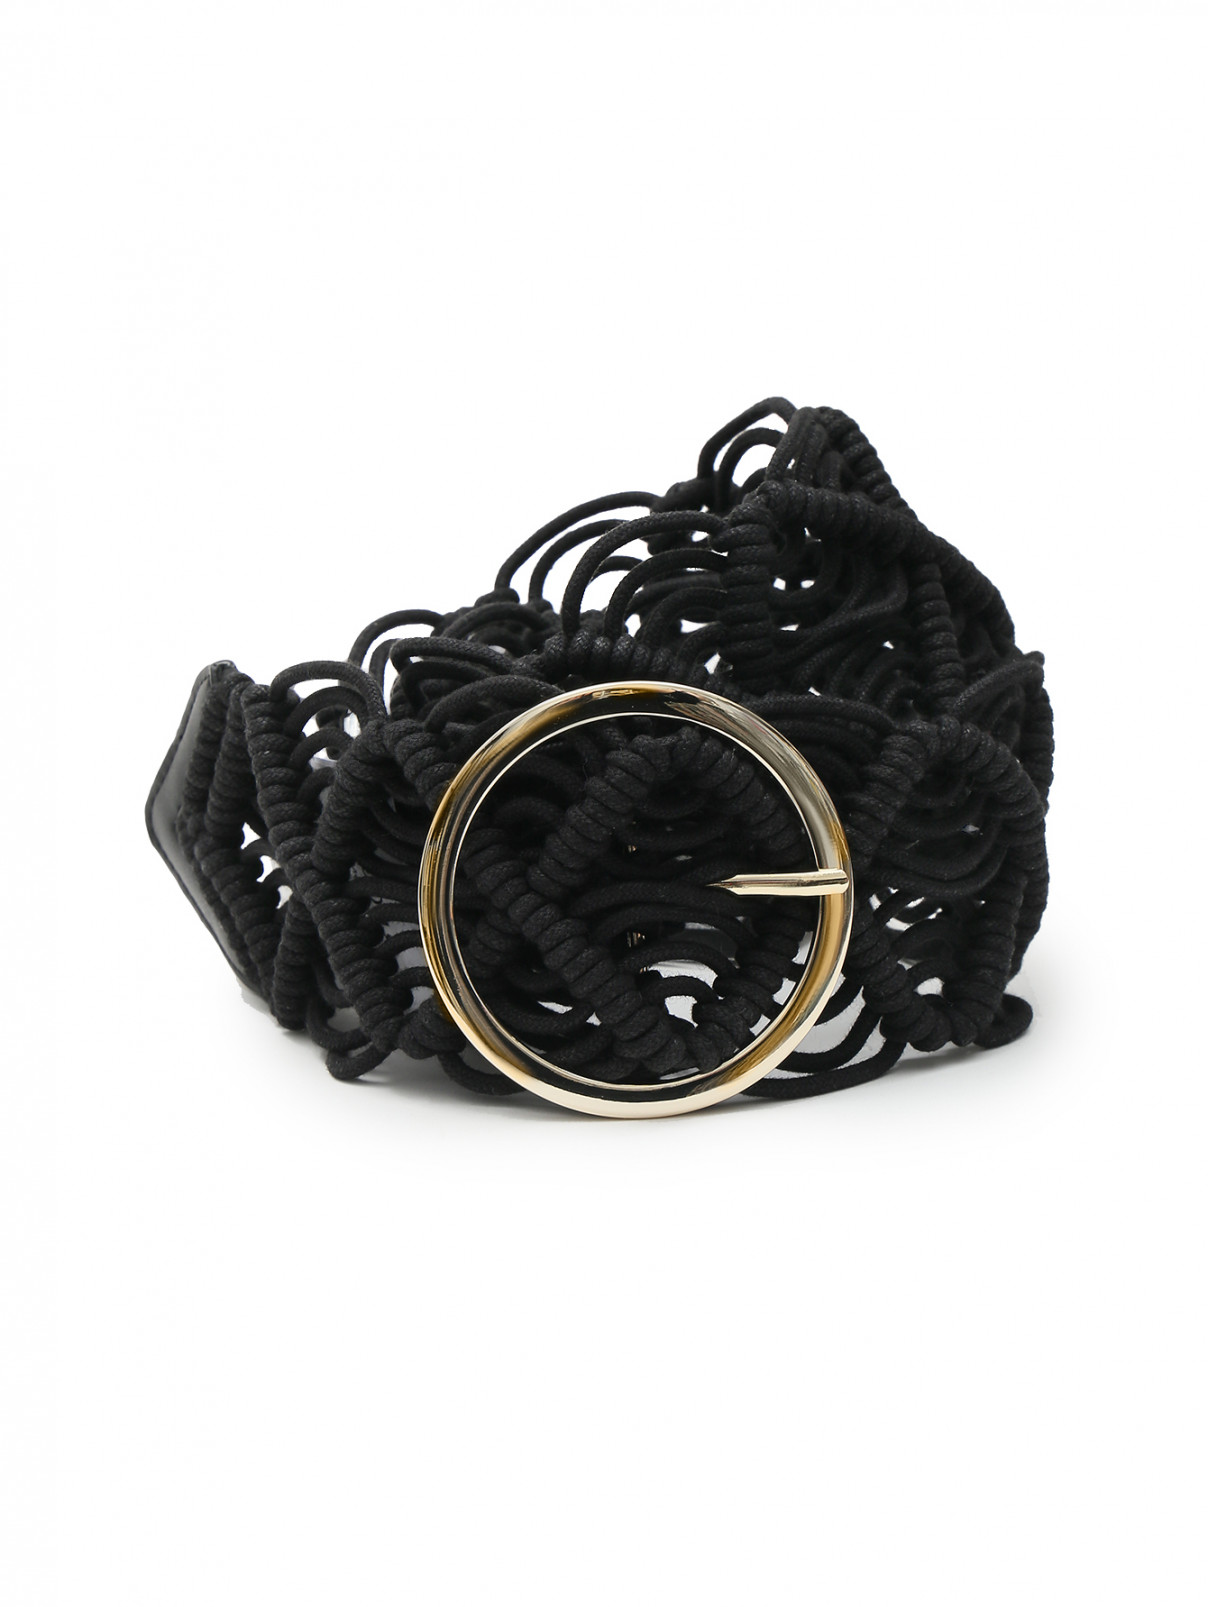 Плетеный ремень с металлической пряжкой Penny Black  –  Общий вид  – Цвет:  Черный